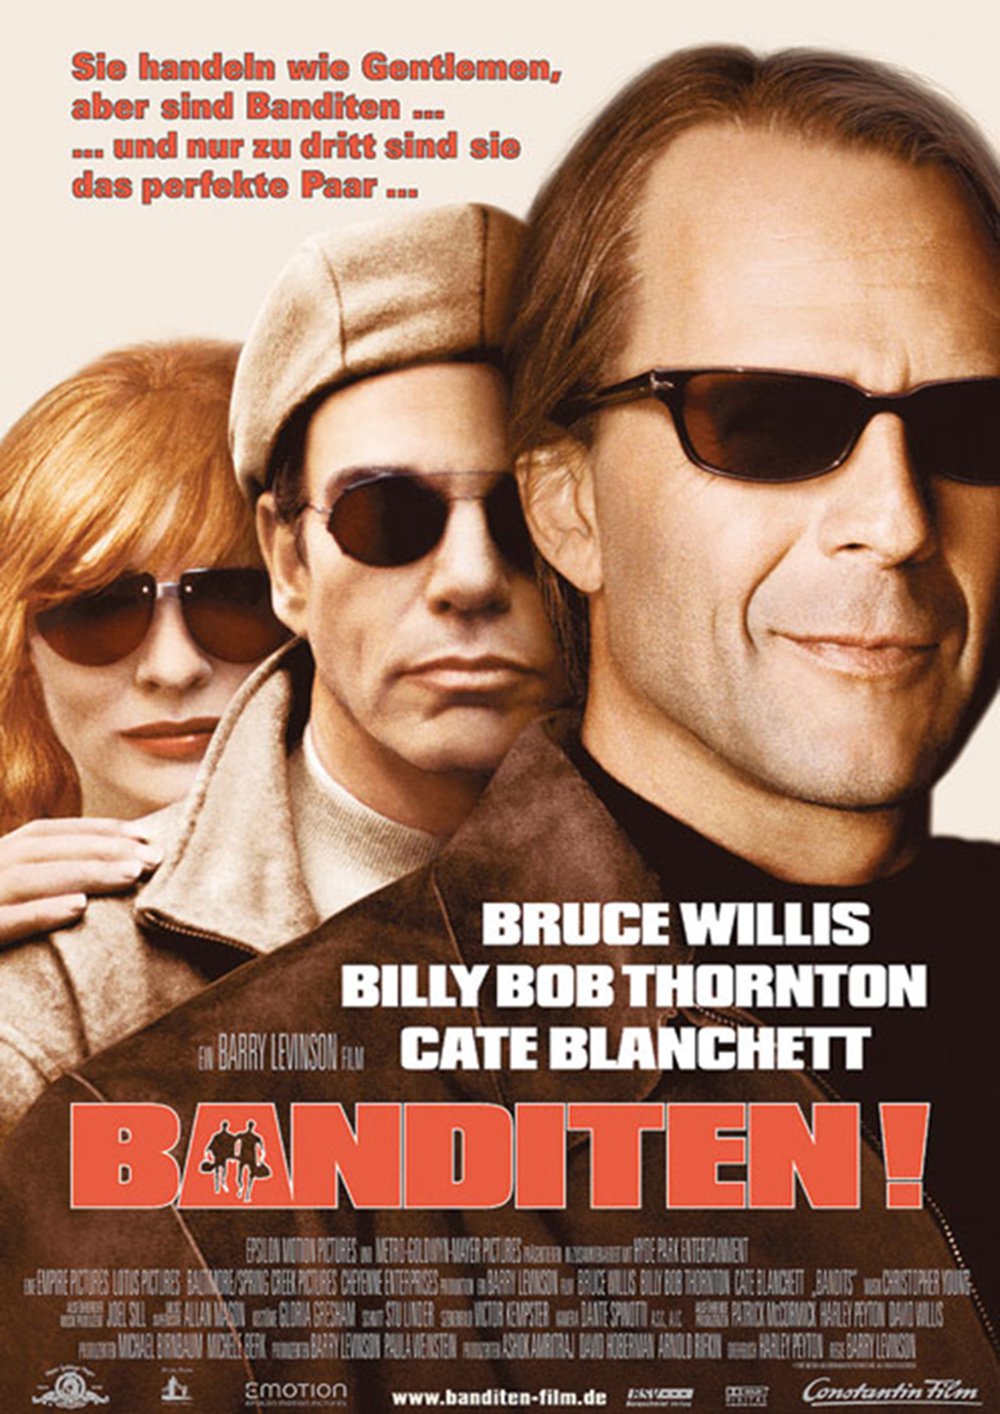 Plakat von "Banditen!"